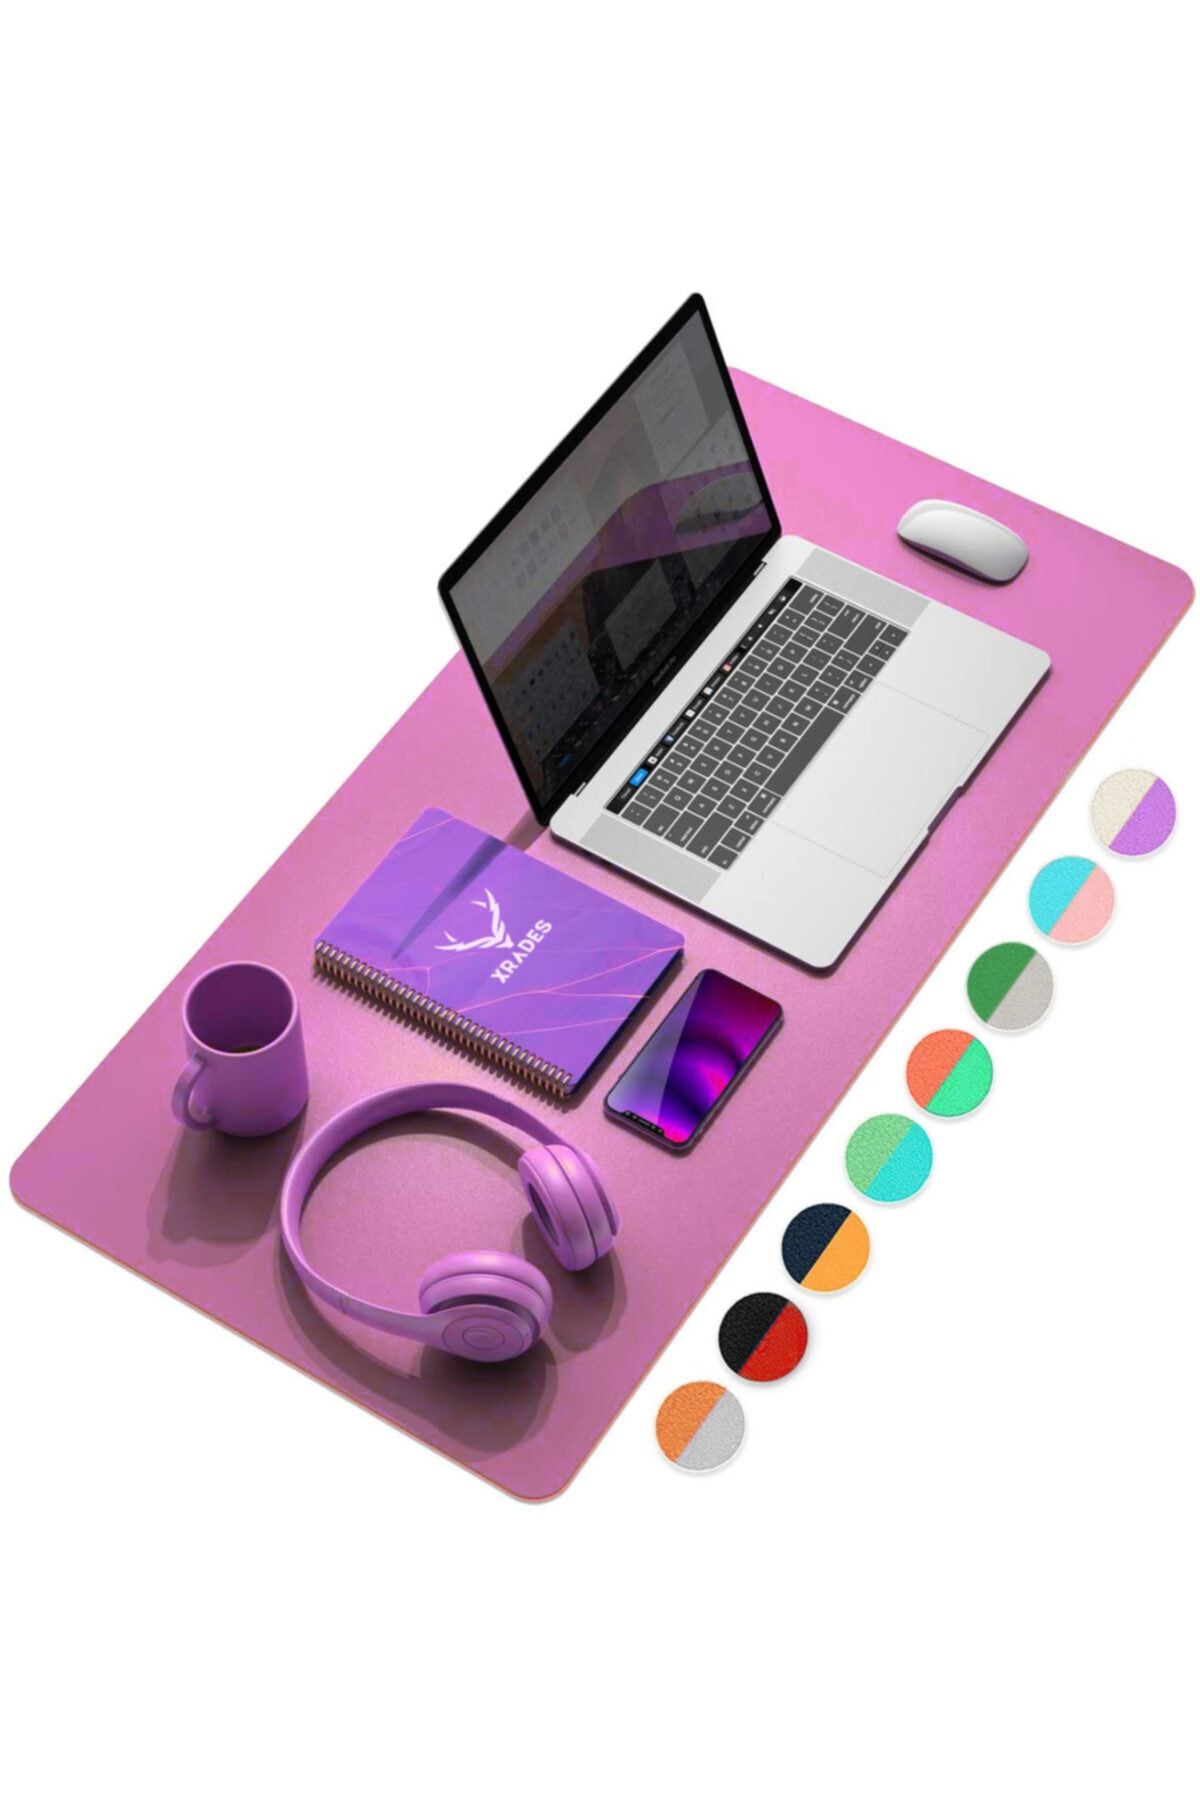 Xrades Çift Renk Deri Mousepad Laptop Bilgisayar Için 80x40 Cm Mor Ve Pembe